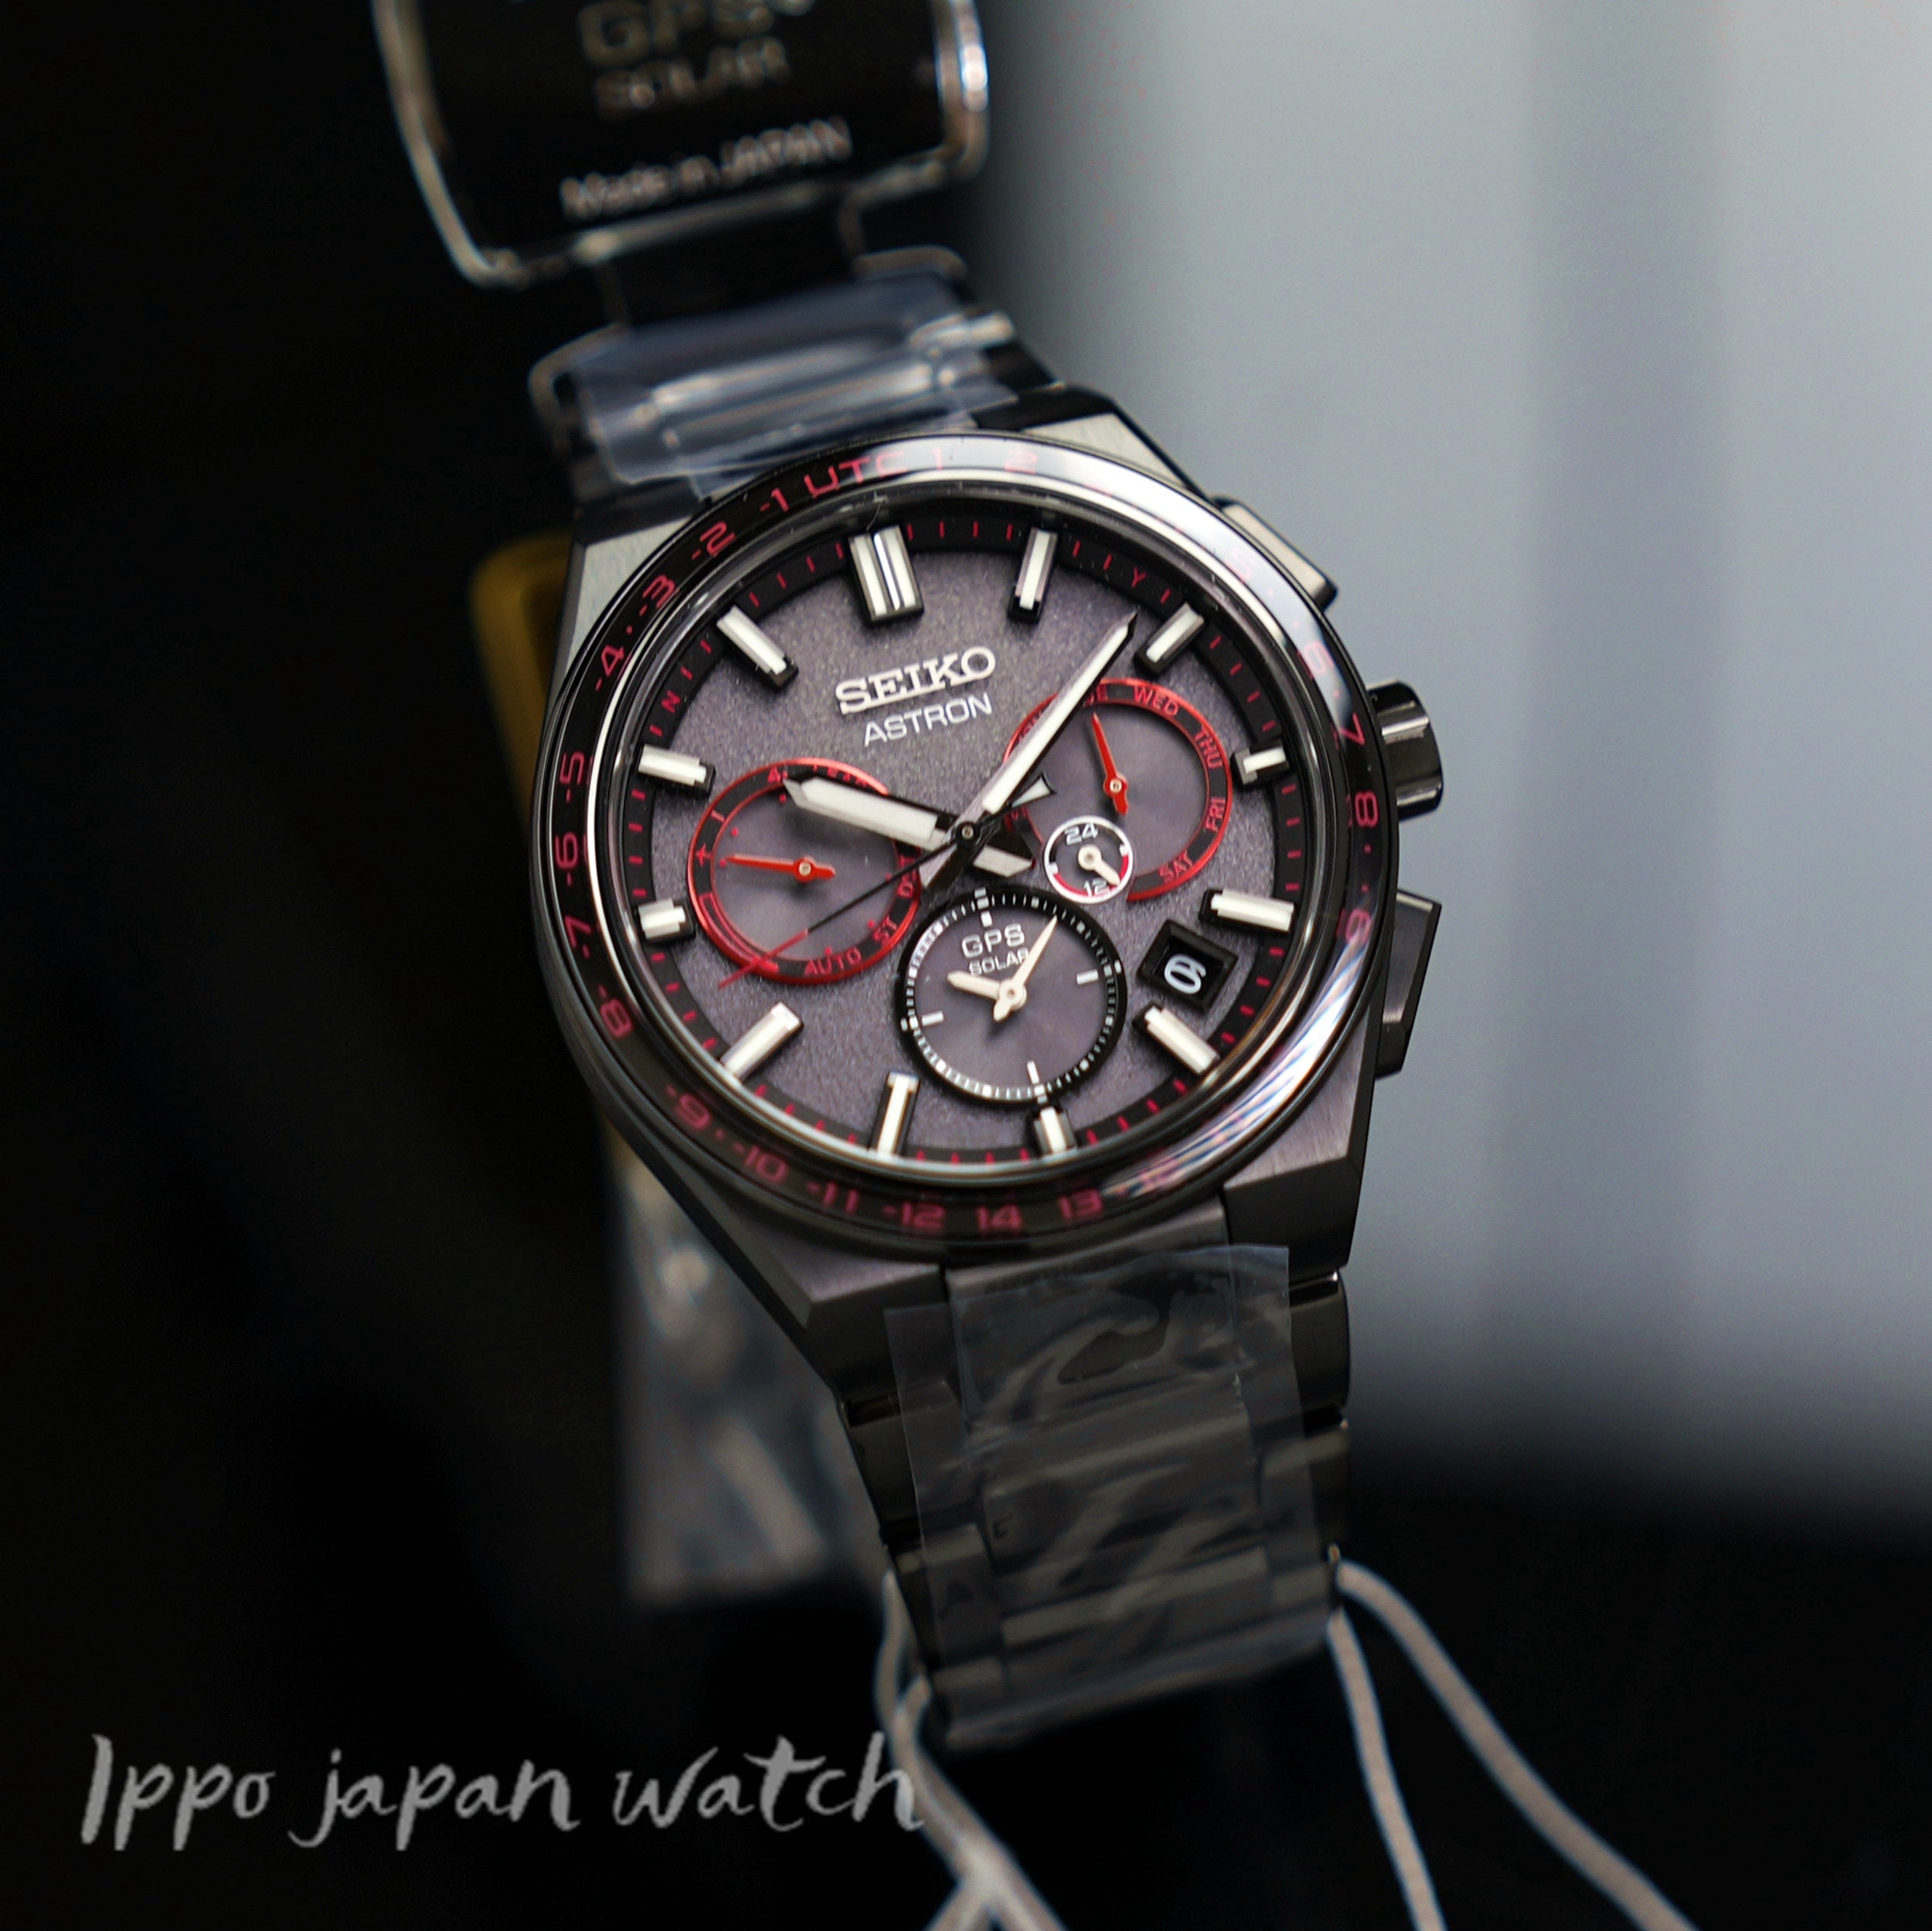 SEIKO astron SBXC137 SSH137 5X53 GPS solar watch 2023.9released - IPPO JAPAN WATCH 